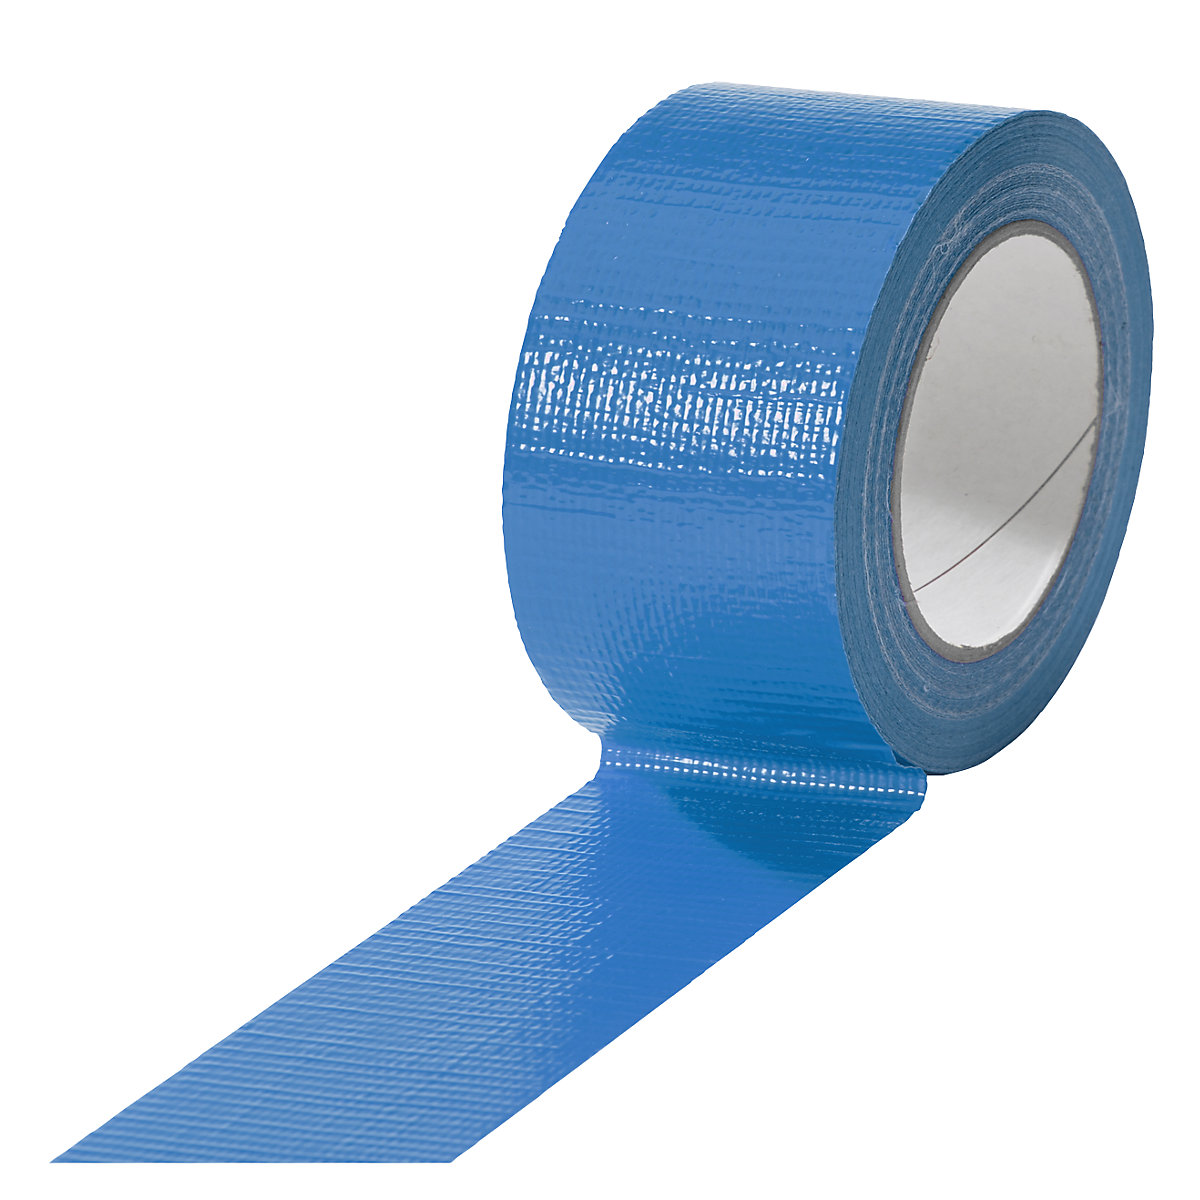 Traka od tkanine, u različitim bojama, pak. 18 rola, u plavoj boji, širina trake 50 mm